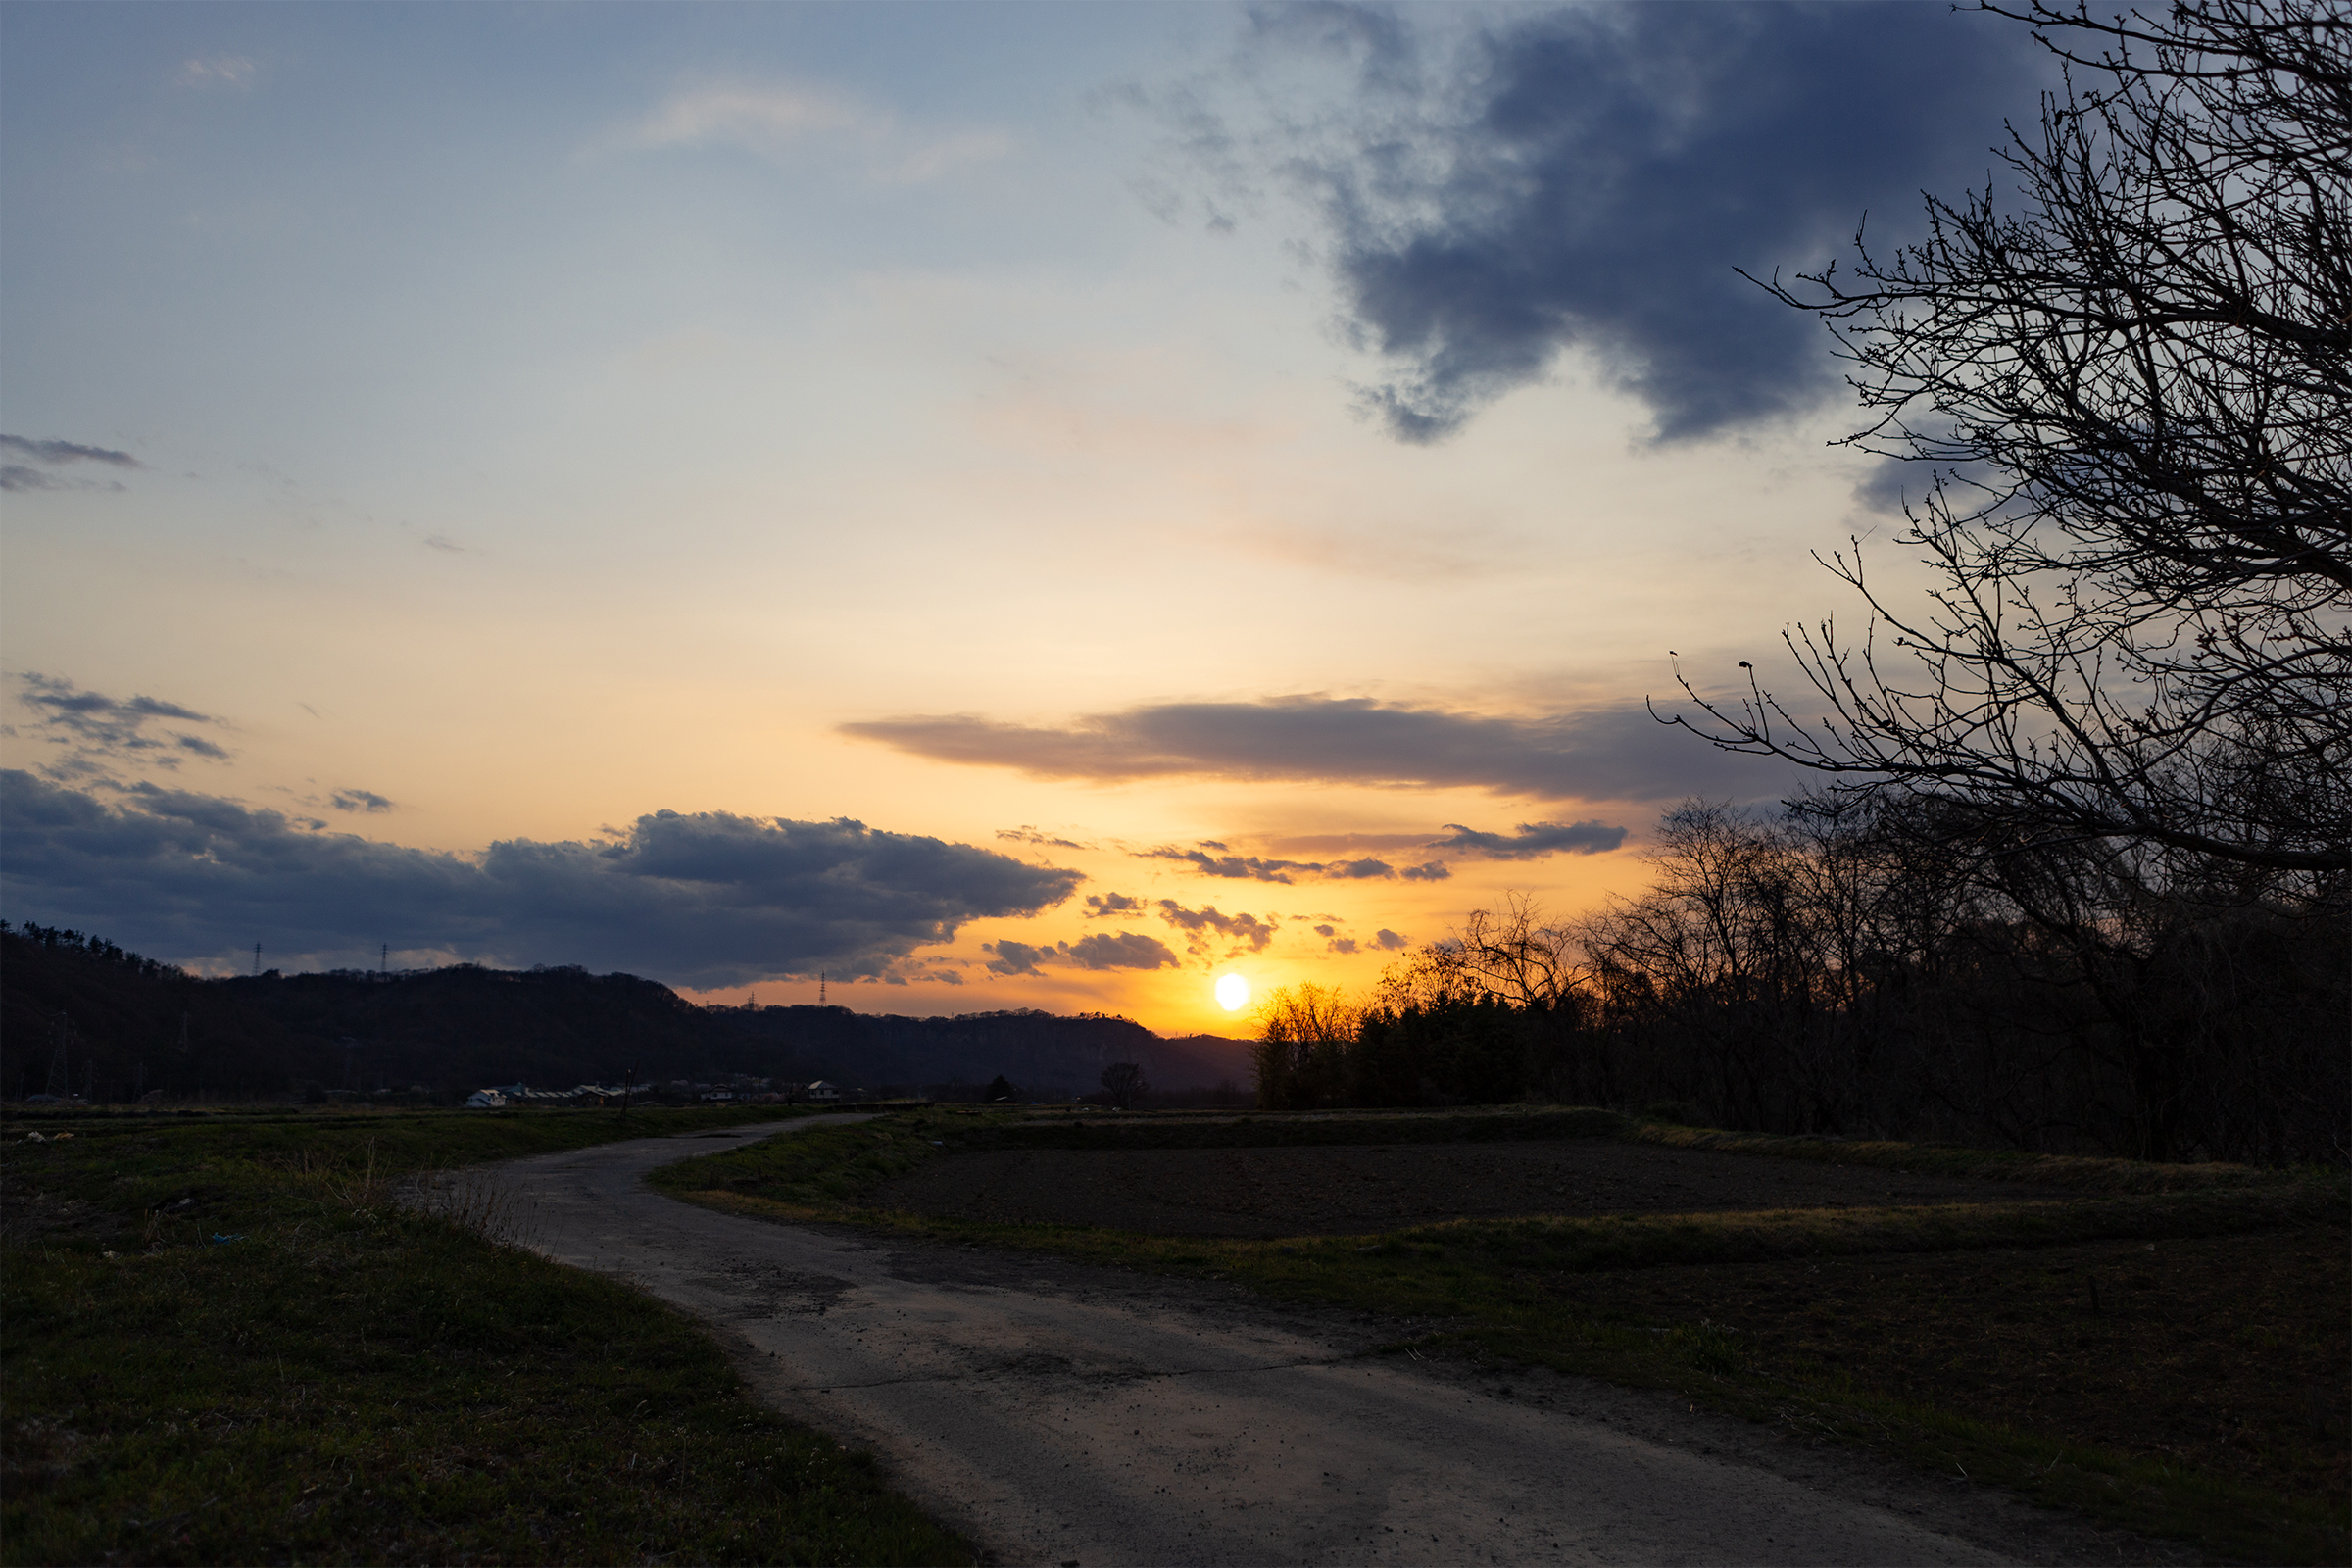 田舎道と夕日 夕焼け 無料の高画質フリー写真素材 イメージズラボ